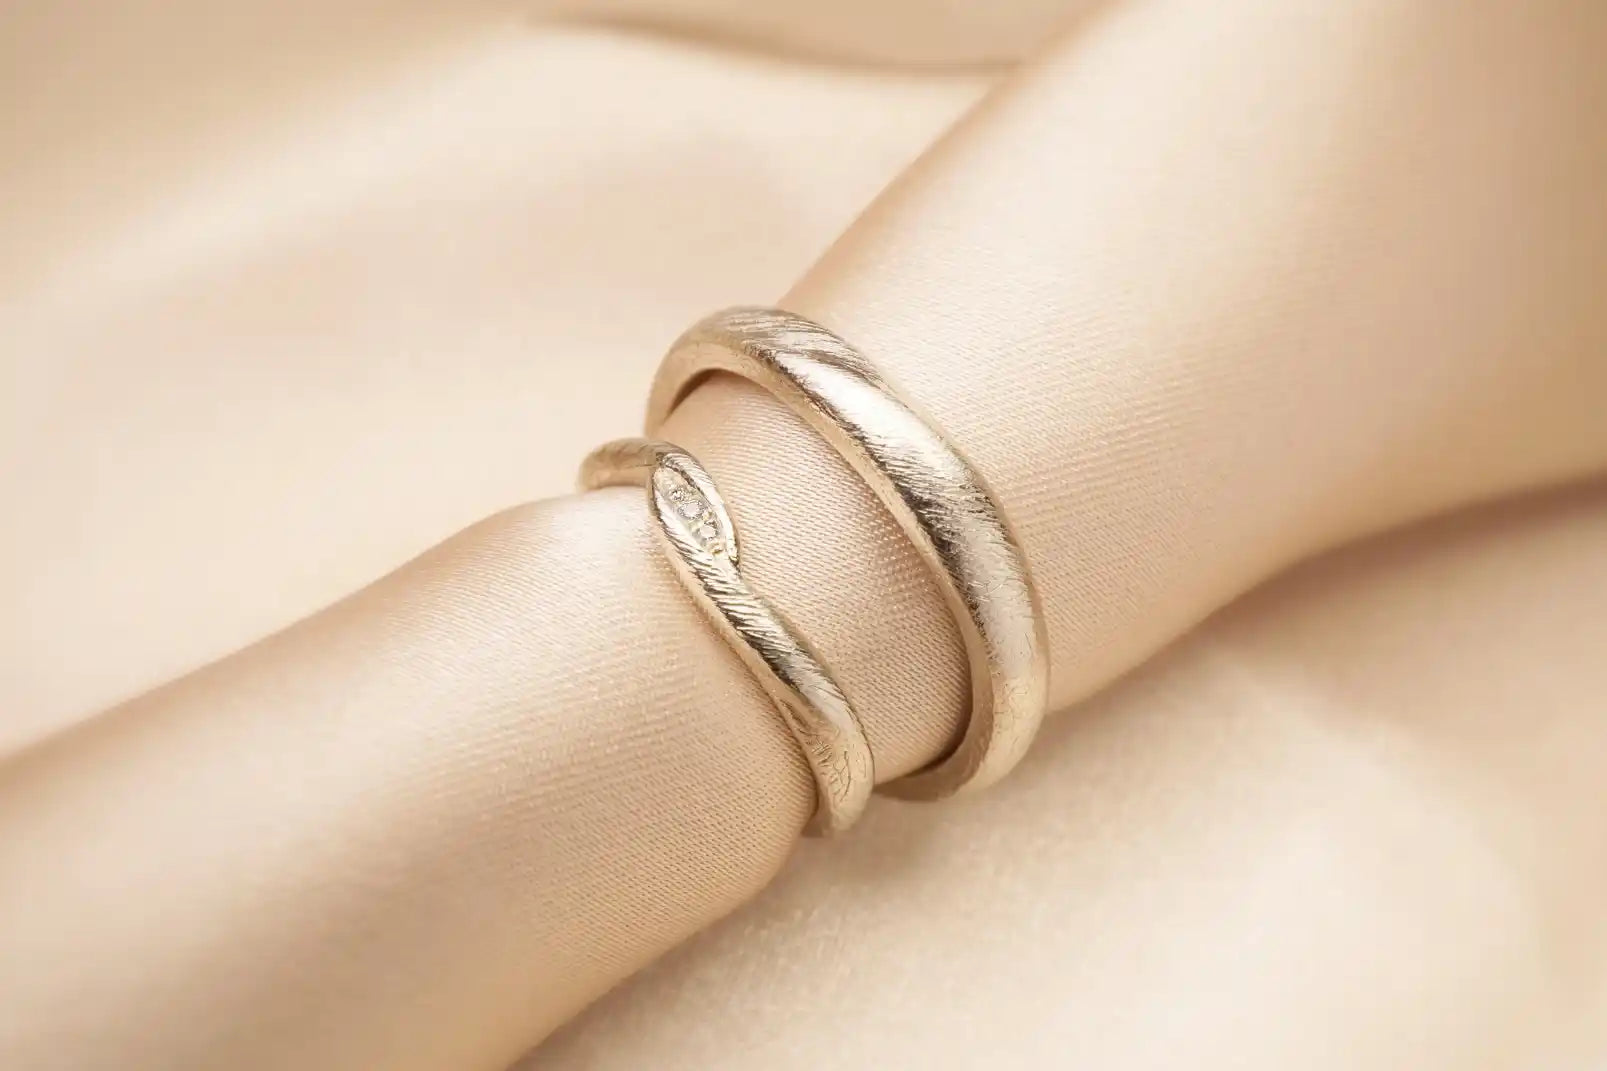 Chia Jewelry客製化簡約對戒介紹，獨特紋路的簡約婚戒設計，以14k金和鑽石手工製作